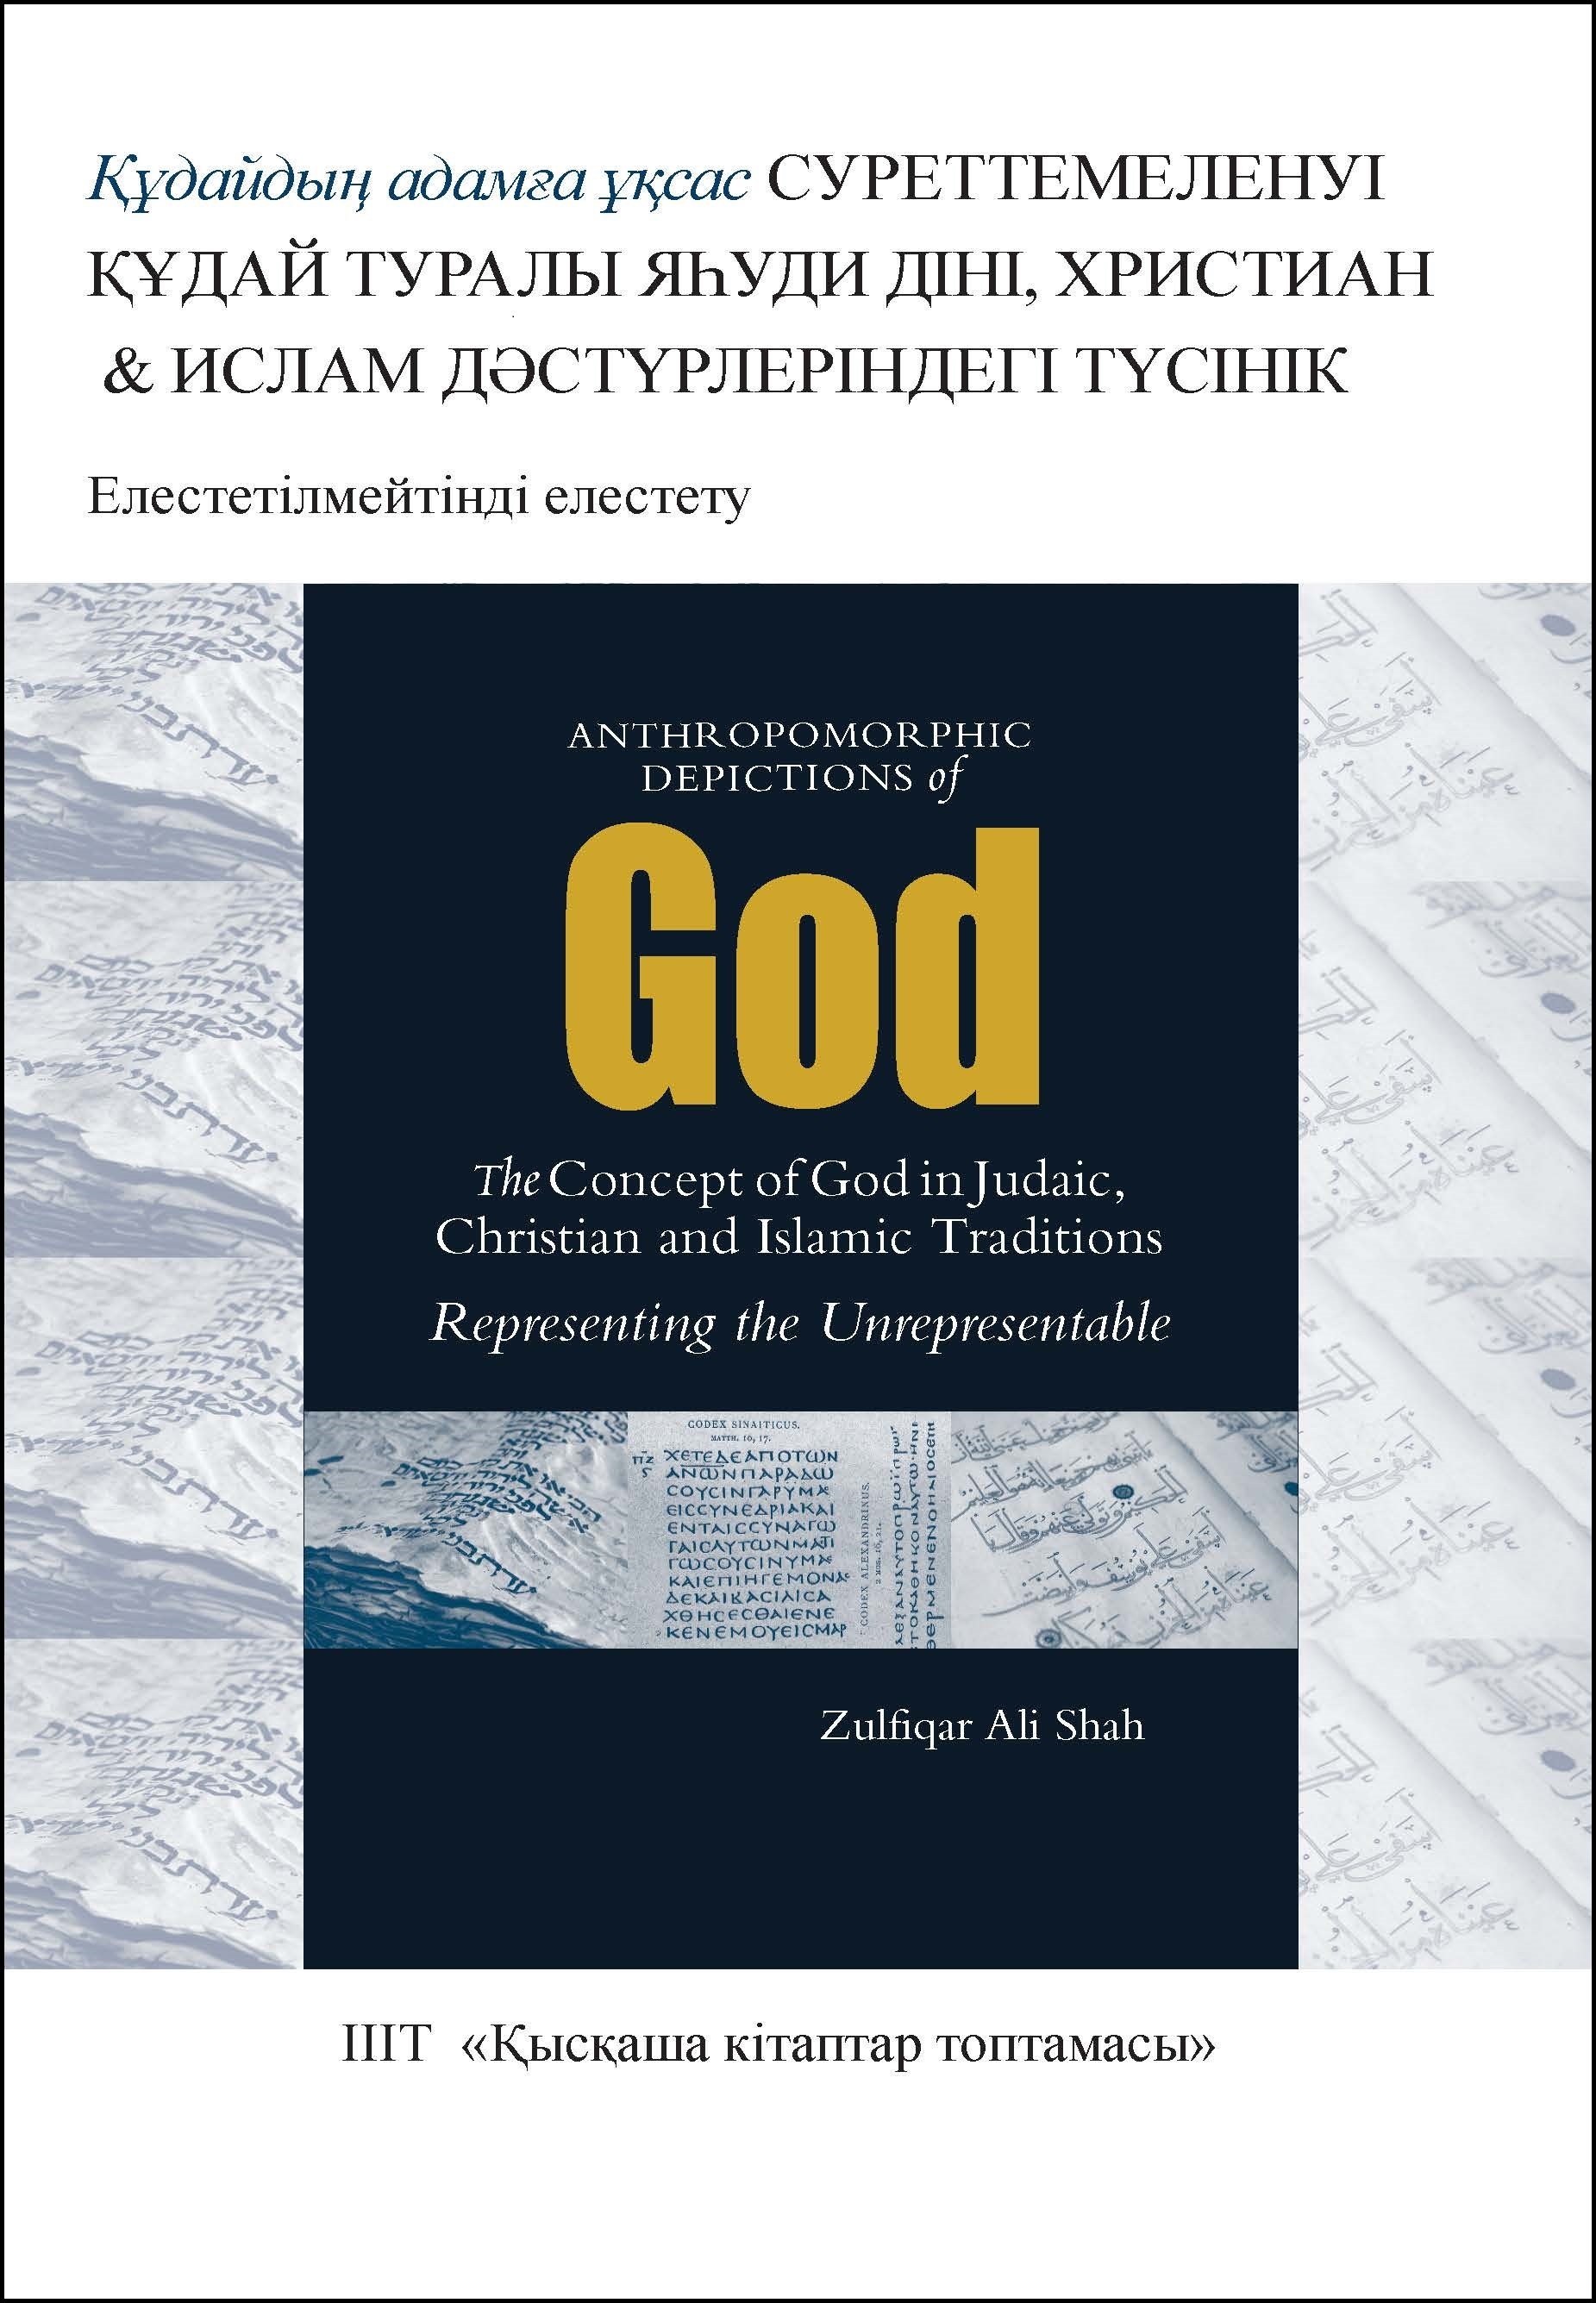 Kazakh: Құдайдың адамға ұқсас суреттемеленуі: Құдай туралы яһуди діні, христиан және ислам дәстүрлеріндегі түсінік (Book-in-Brief: Anthropomorphic Depictions of God: The Concept of God in Judaic, Christian, and Islamic Traditions: Representing the Unrepresentable)